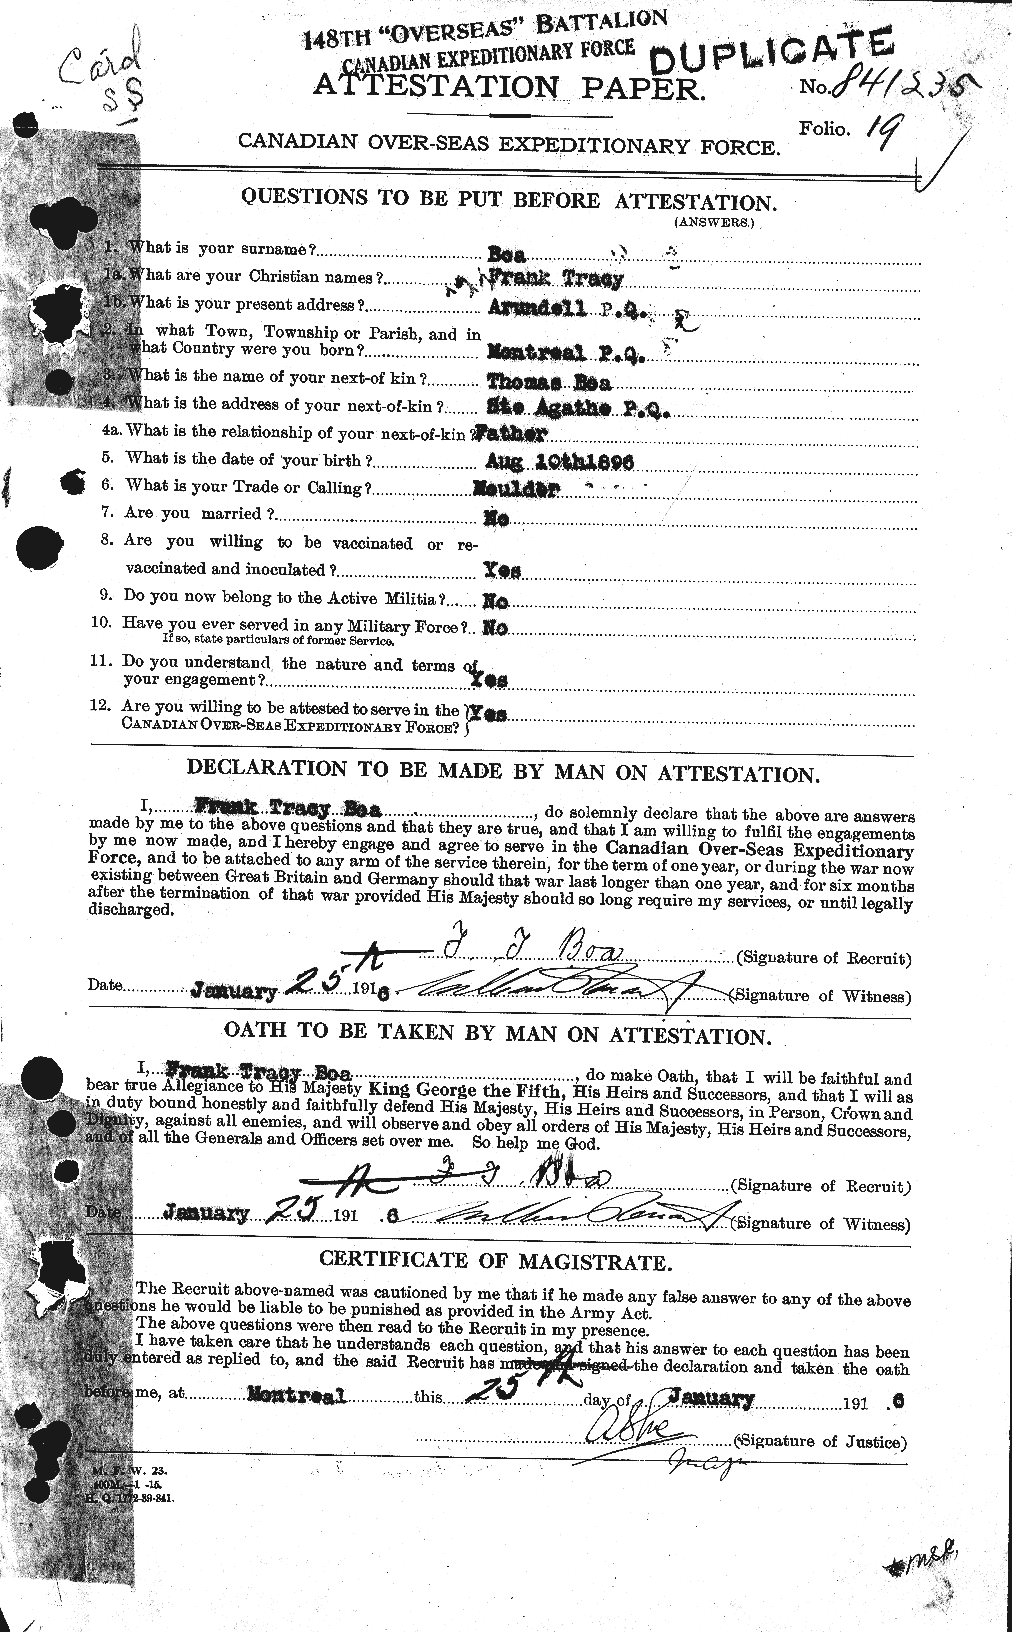 Dossiers du Personnel de la Première Guerre mondiale - CEC 247354a